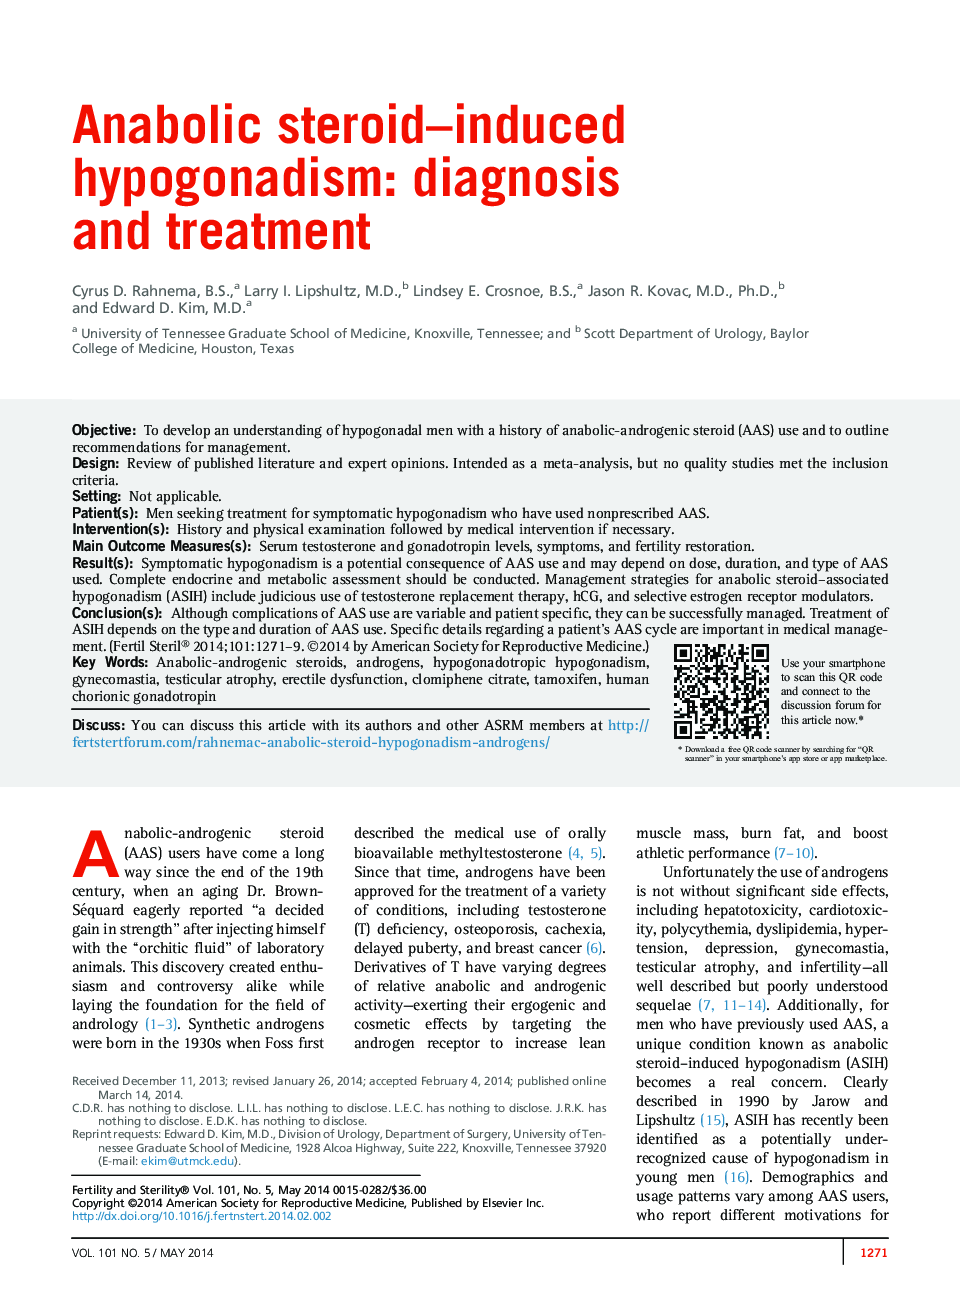 هیپوگنادیسم ناشی از استروئید آنابولیک: تشخیص و درمان 